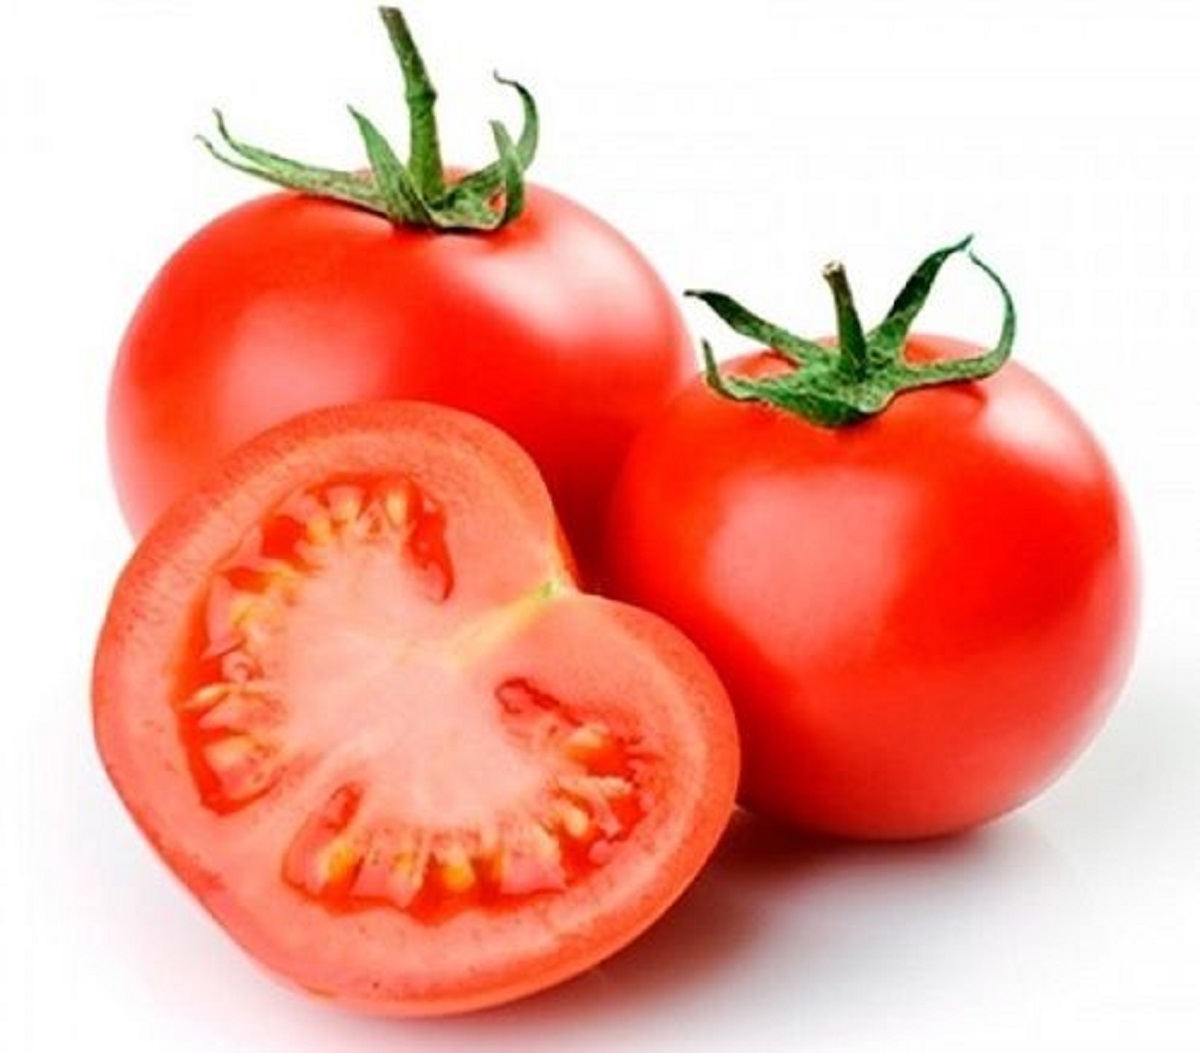 Manfaat Buah Tomat Yang Kaya Akan Nutrisi Bagi Kesehatan dan Kecantikan